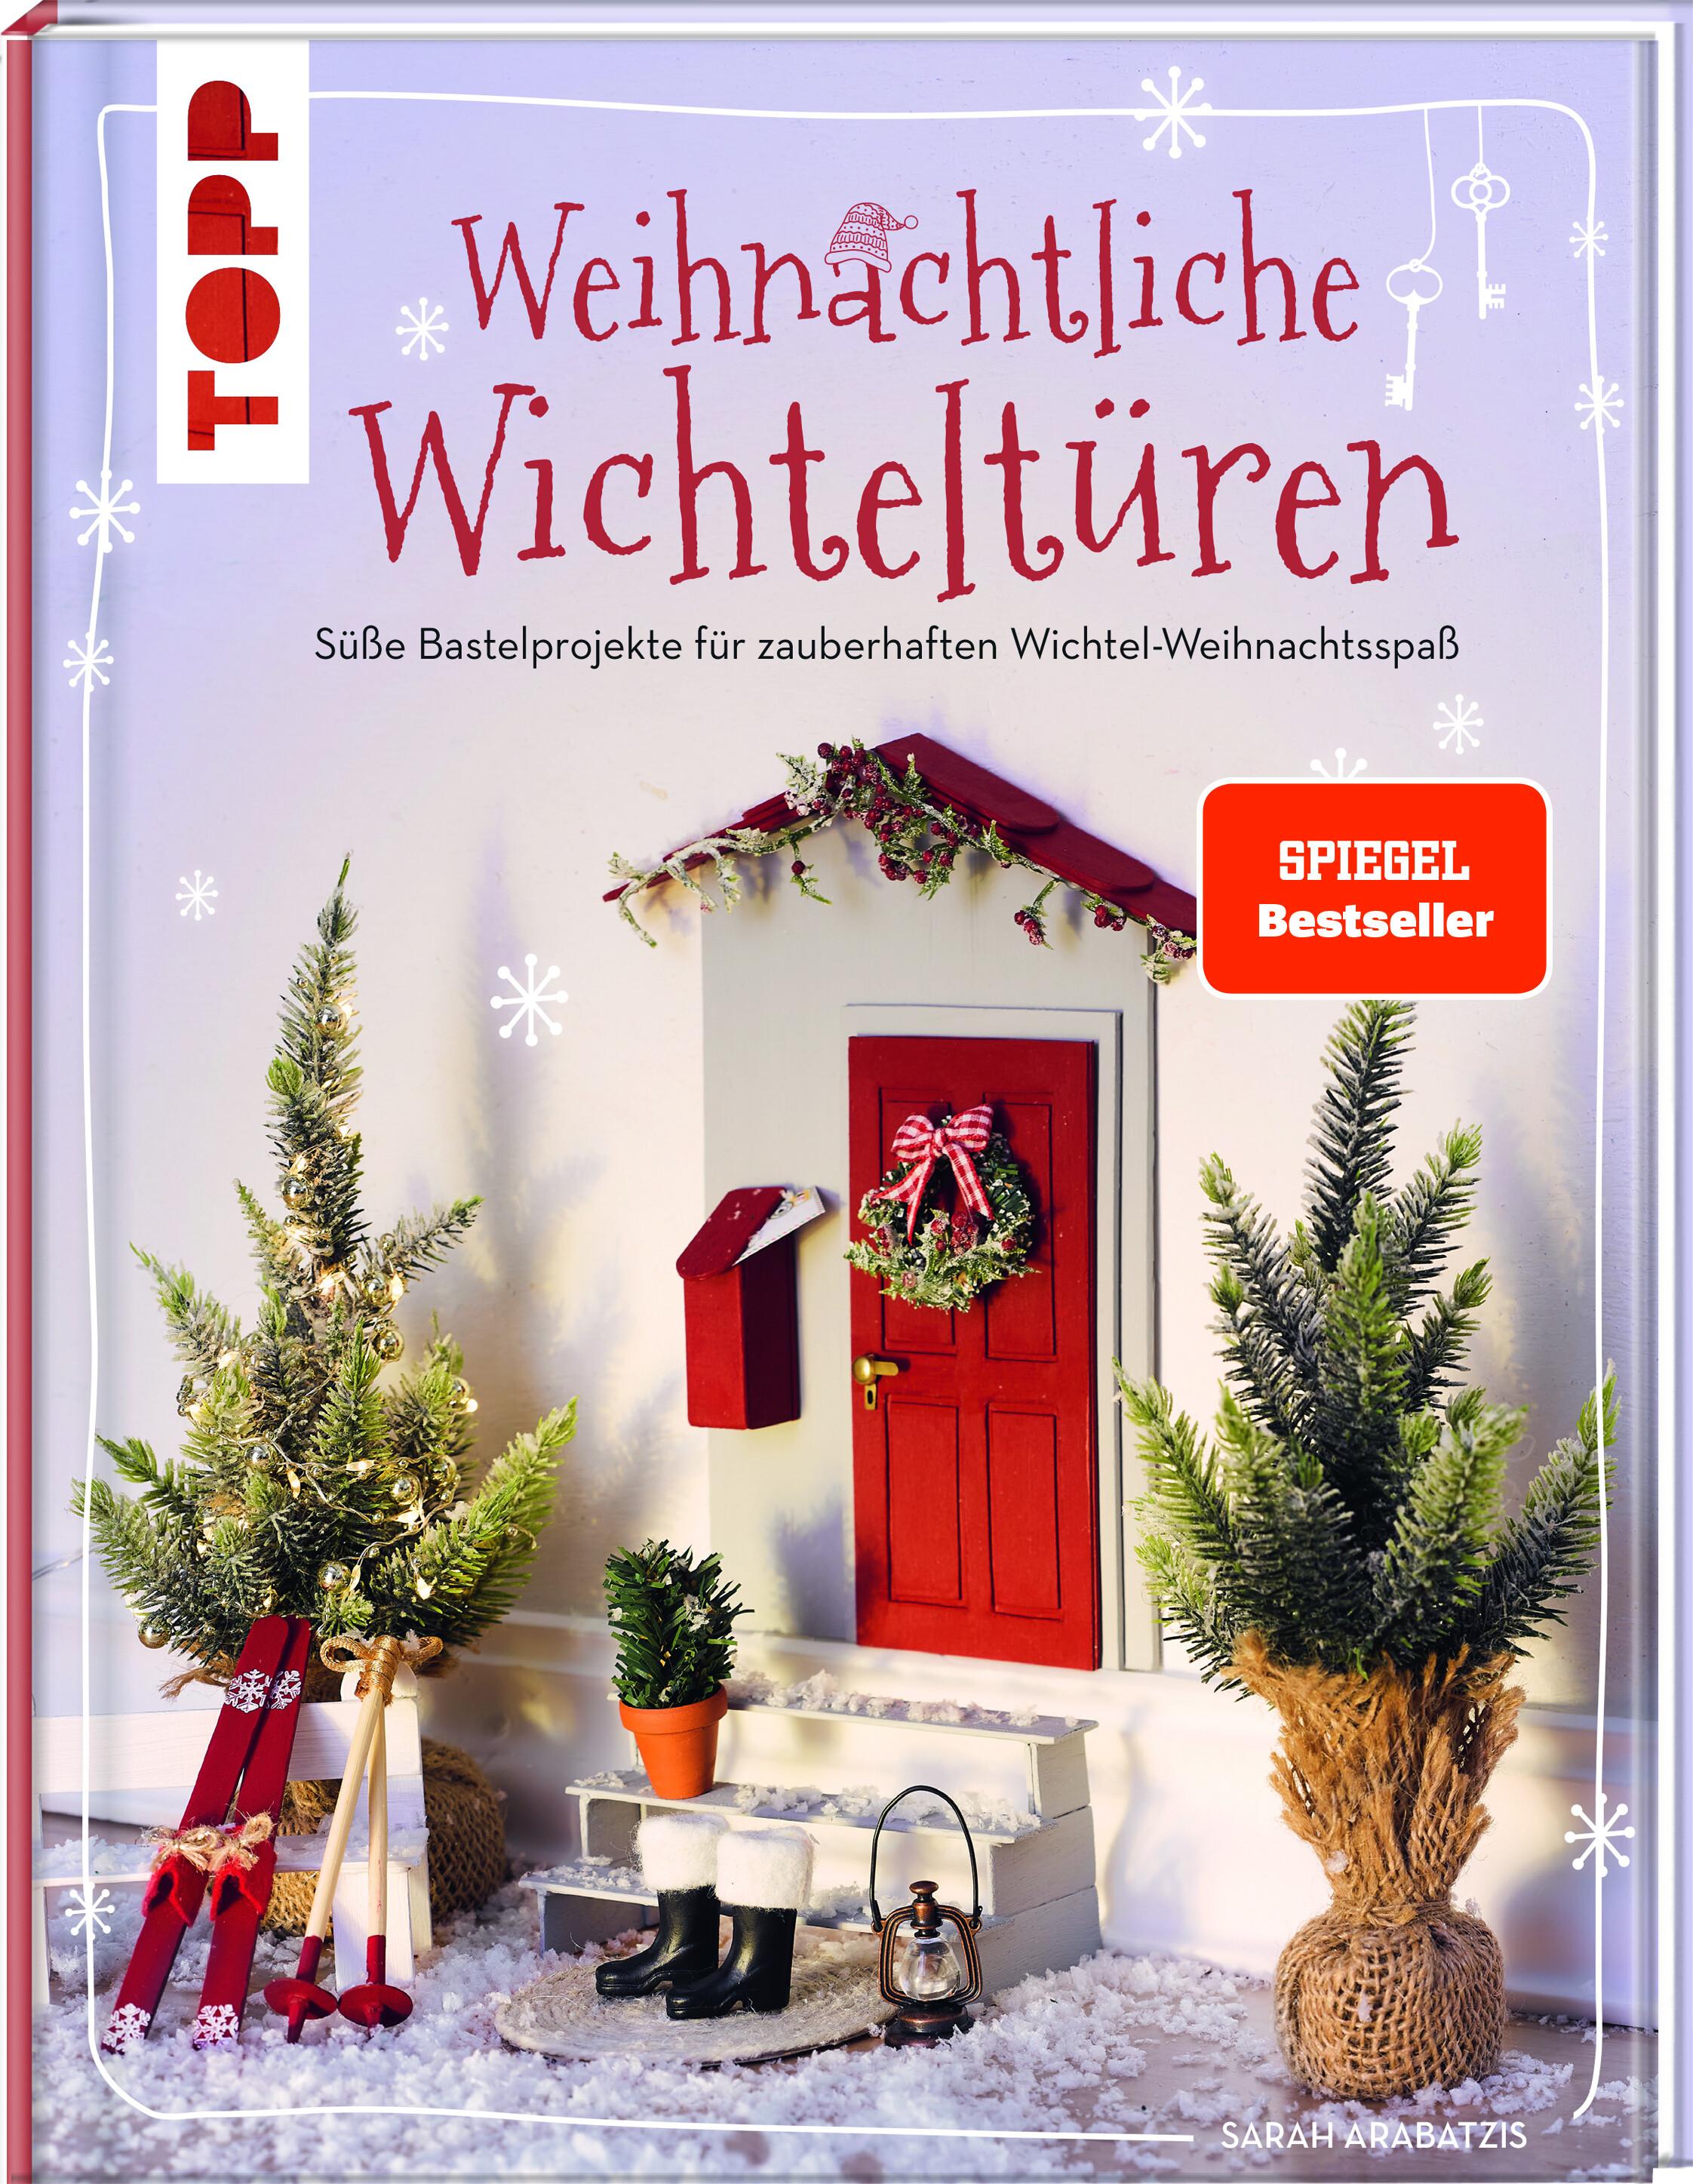 Weihnachtliche Wichteltüren. Süße Bastelprojekte für zauberhaften Wichtel-Weihnachtsspaß. SPIEGEL Bestseller